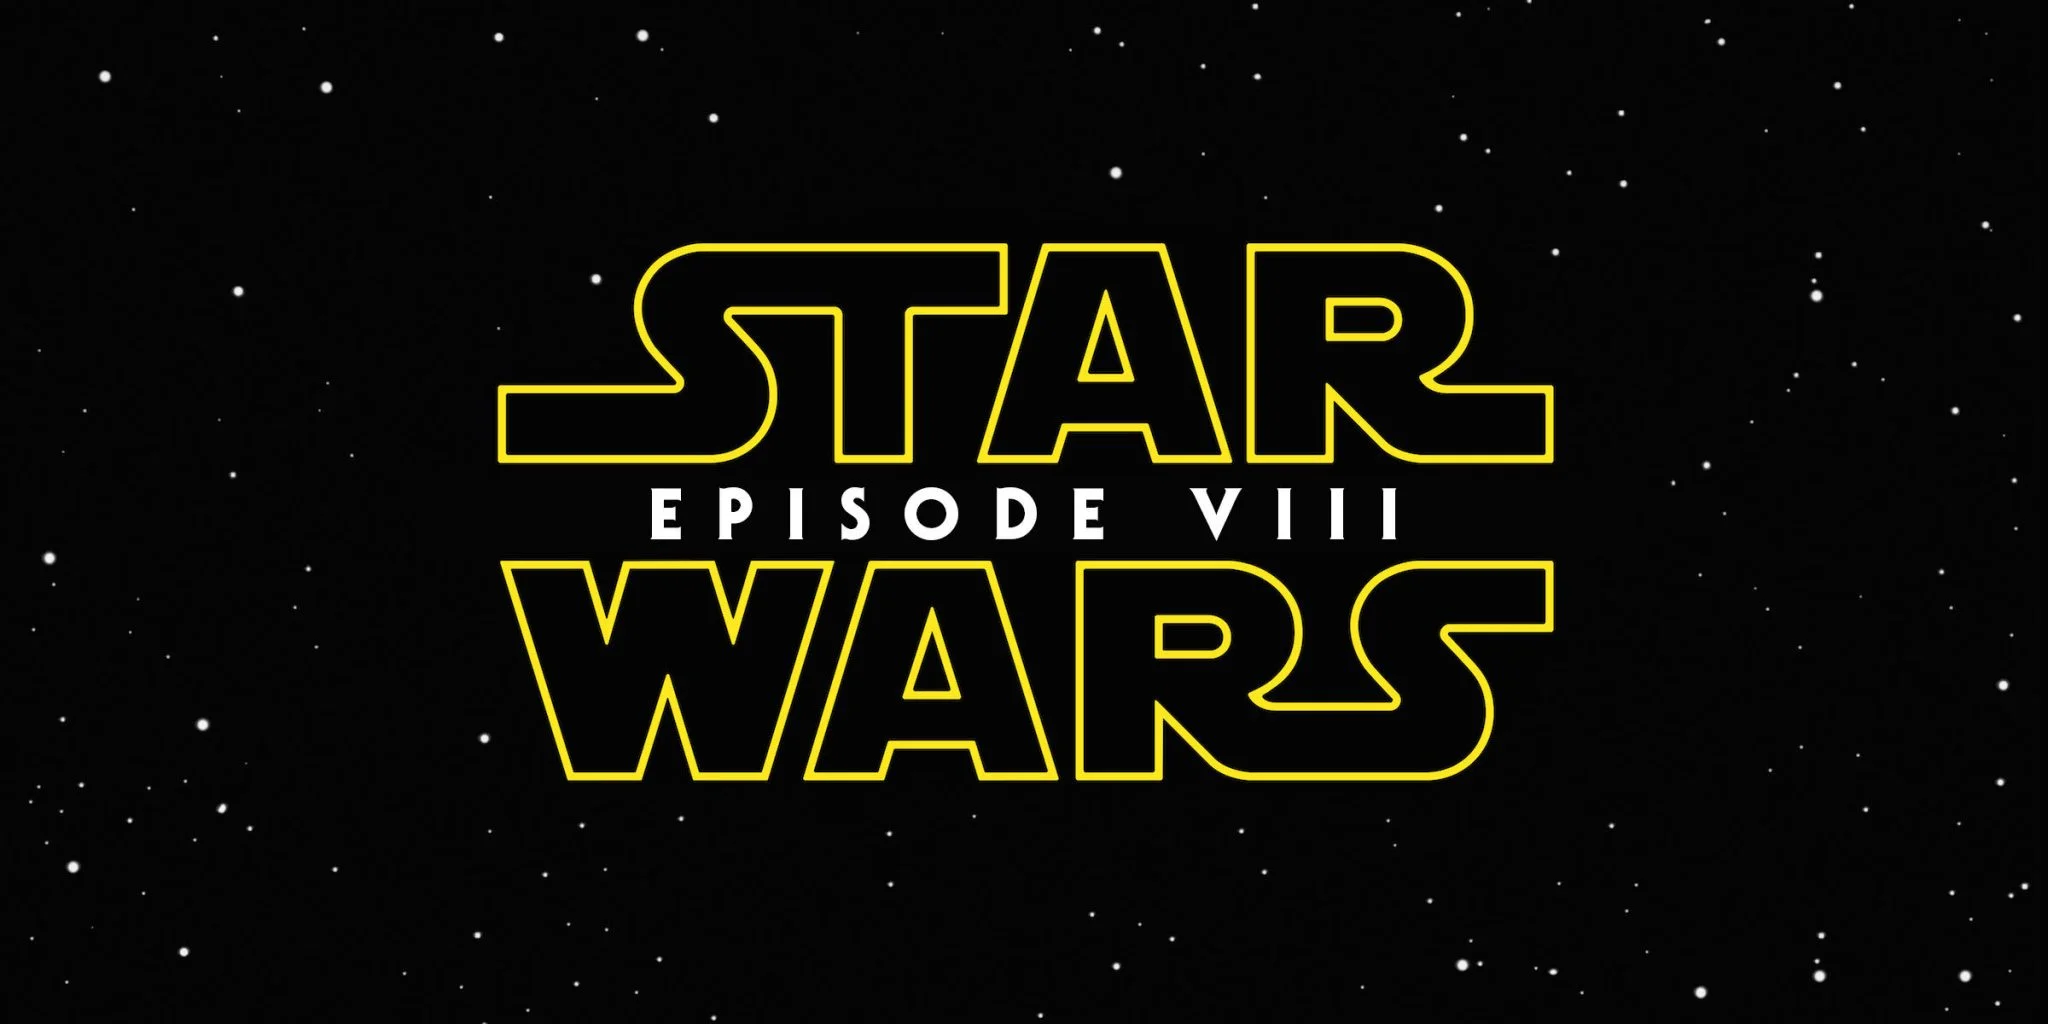 Megtudtuk, hogy mi lesz a Star Wars Episode VIII címe